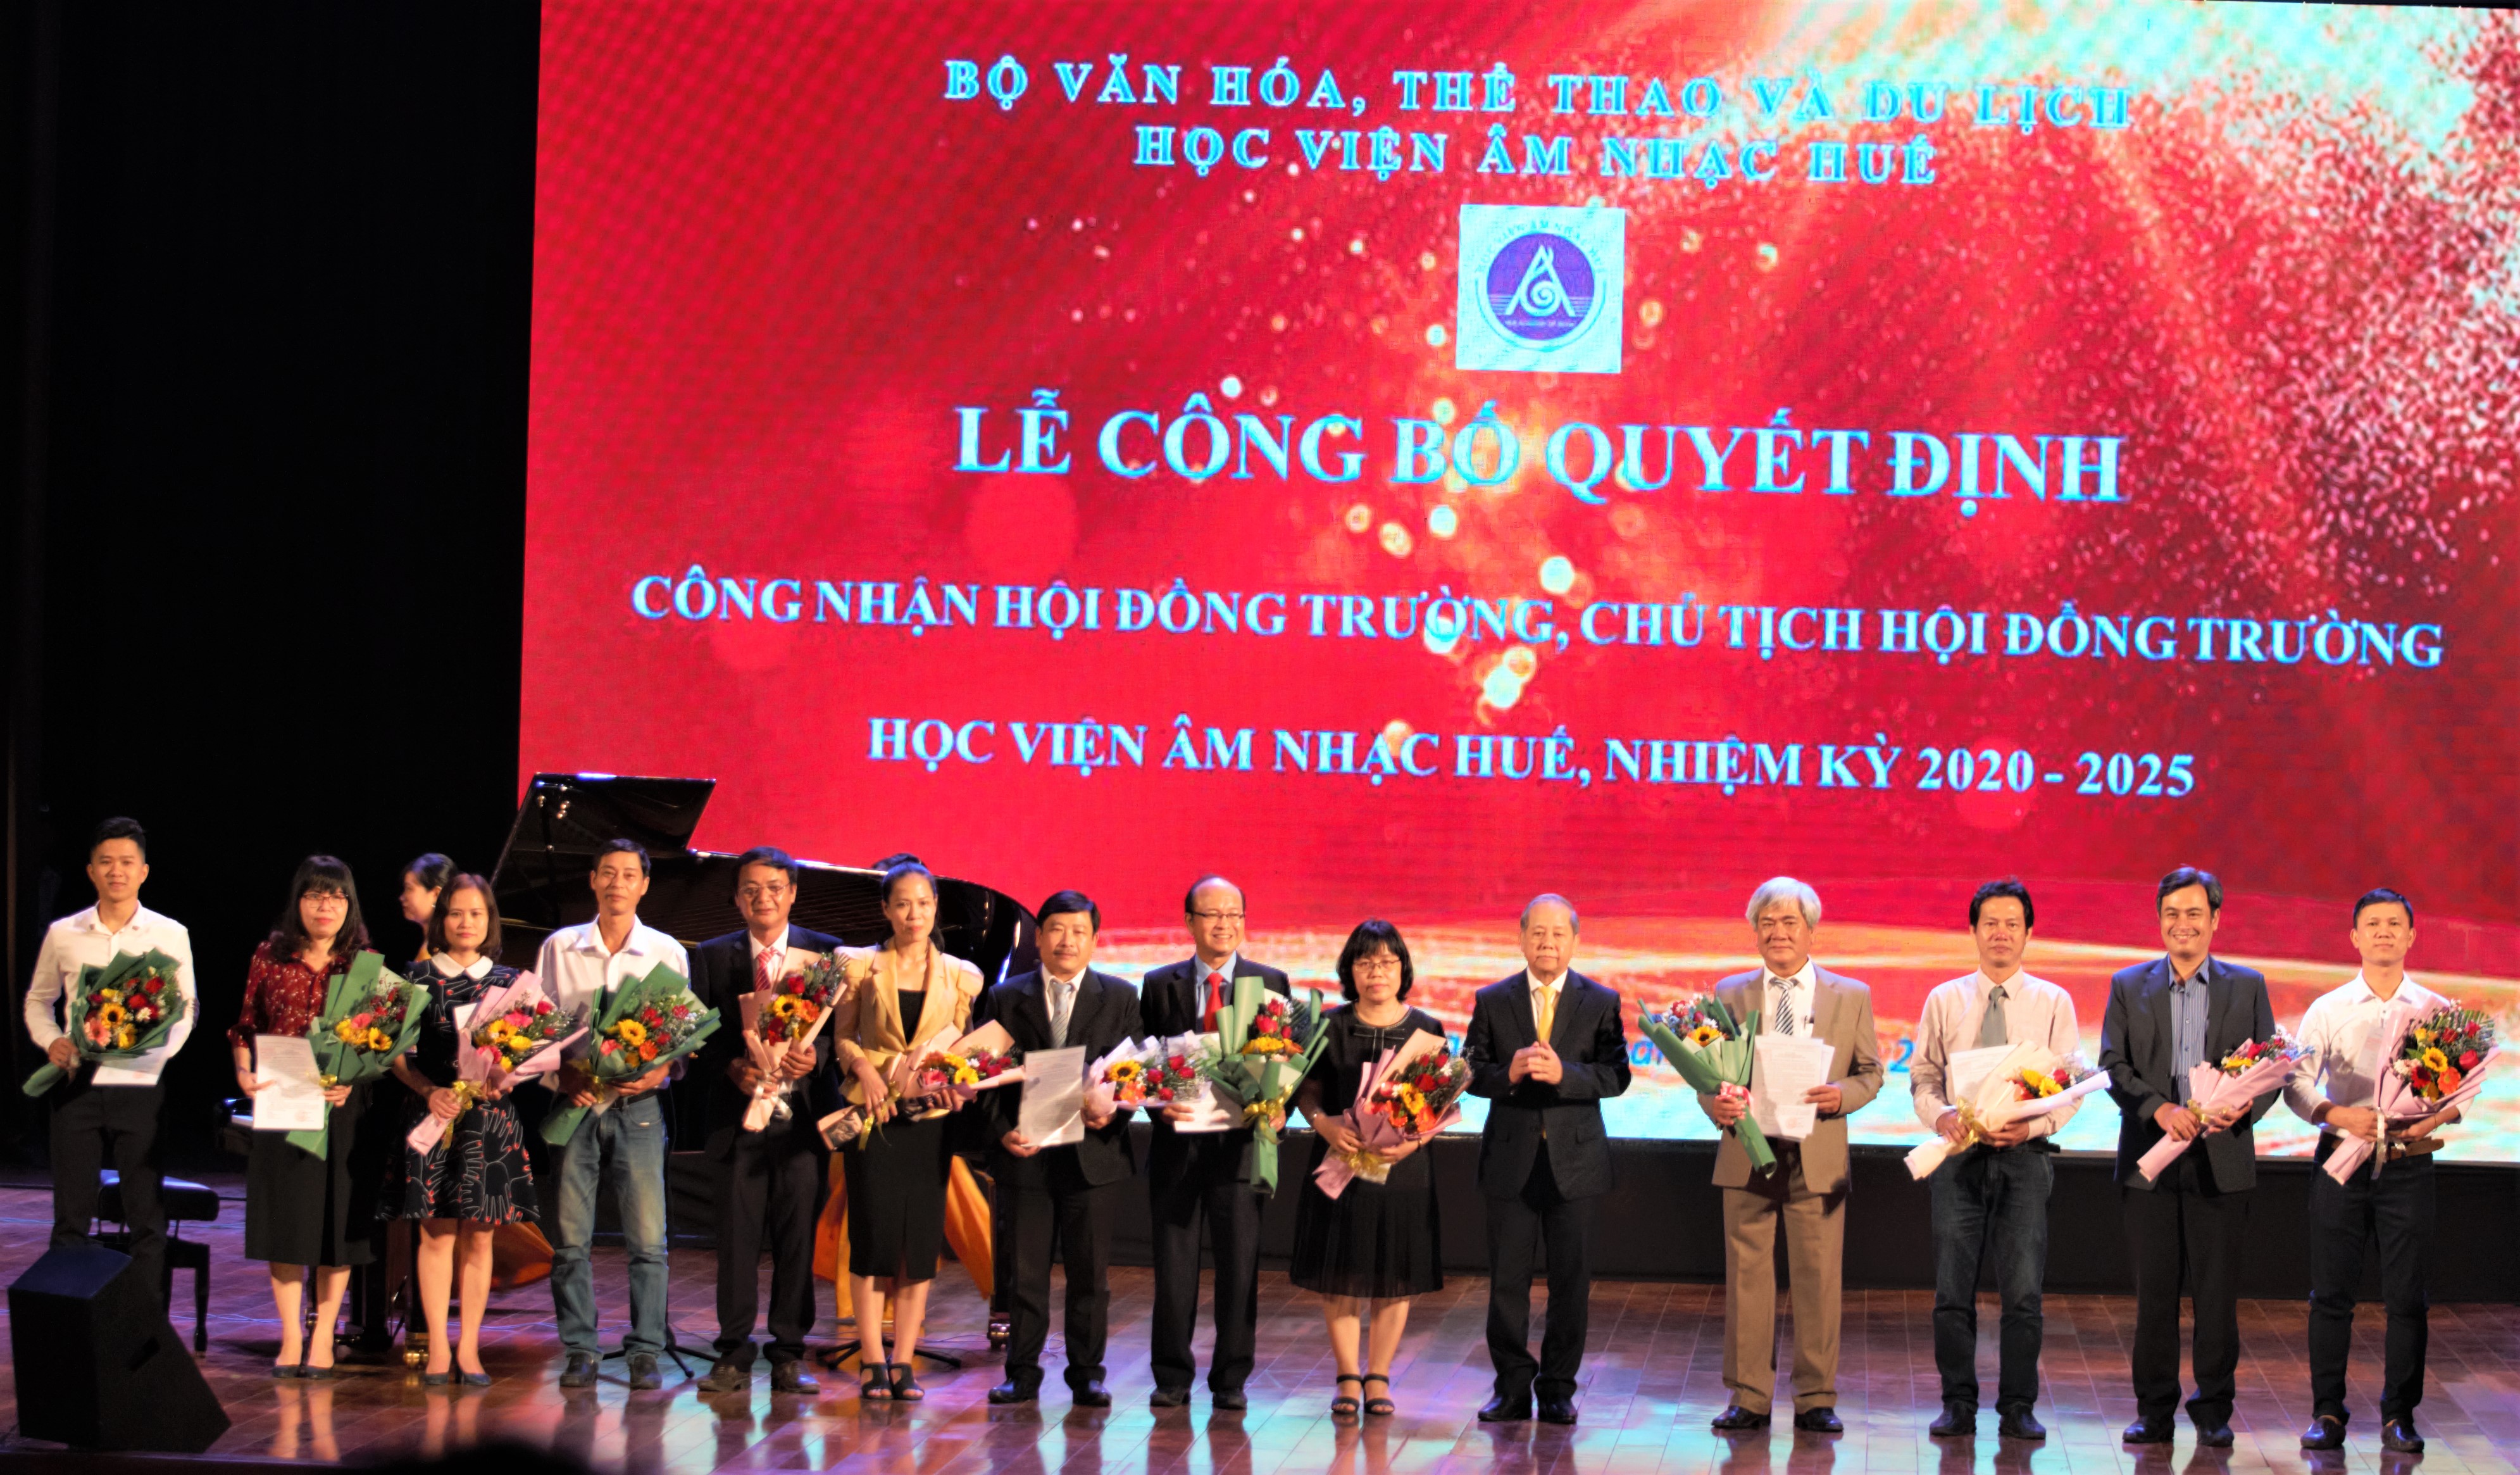 Chủ tịch UBND tỉnh Phan Ngọc Thọ trao quyết định cho các thành viên Hội đồng trường Học viện Âm nhạc Huế, nhiệm kỳ 2020 – 2025